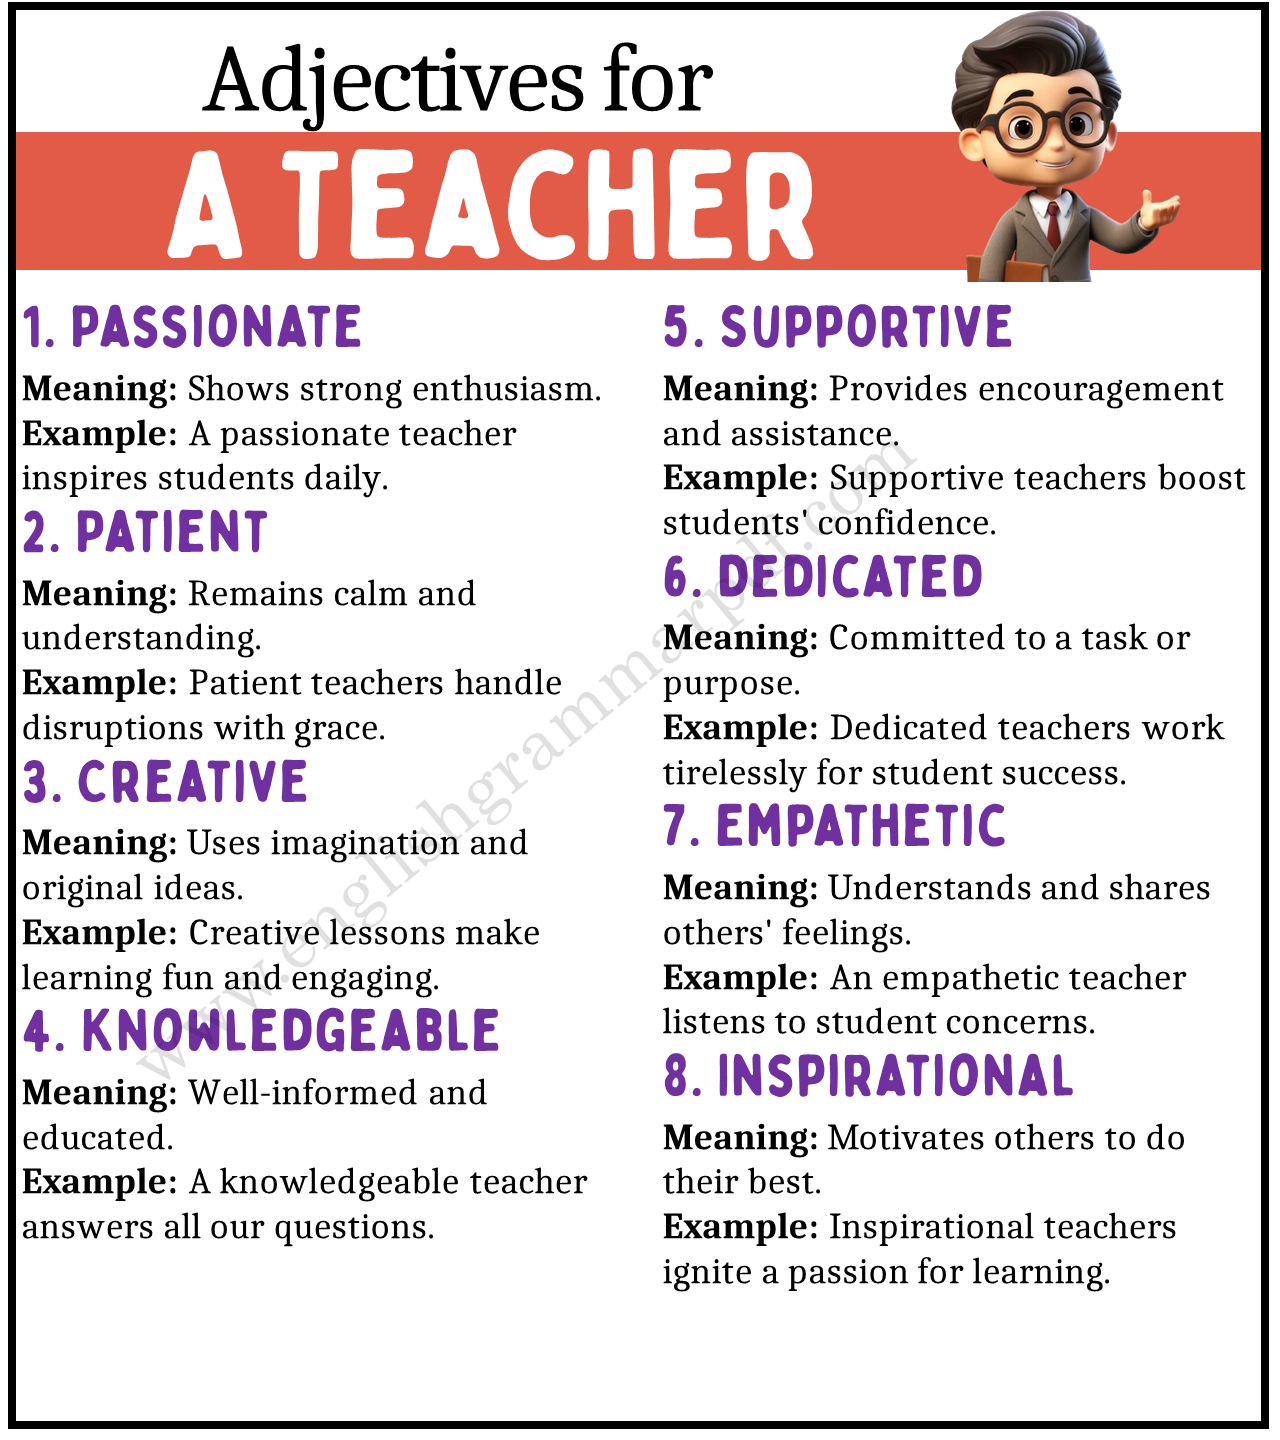 Adjectives to Describe a Teacher